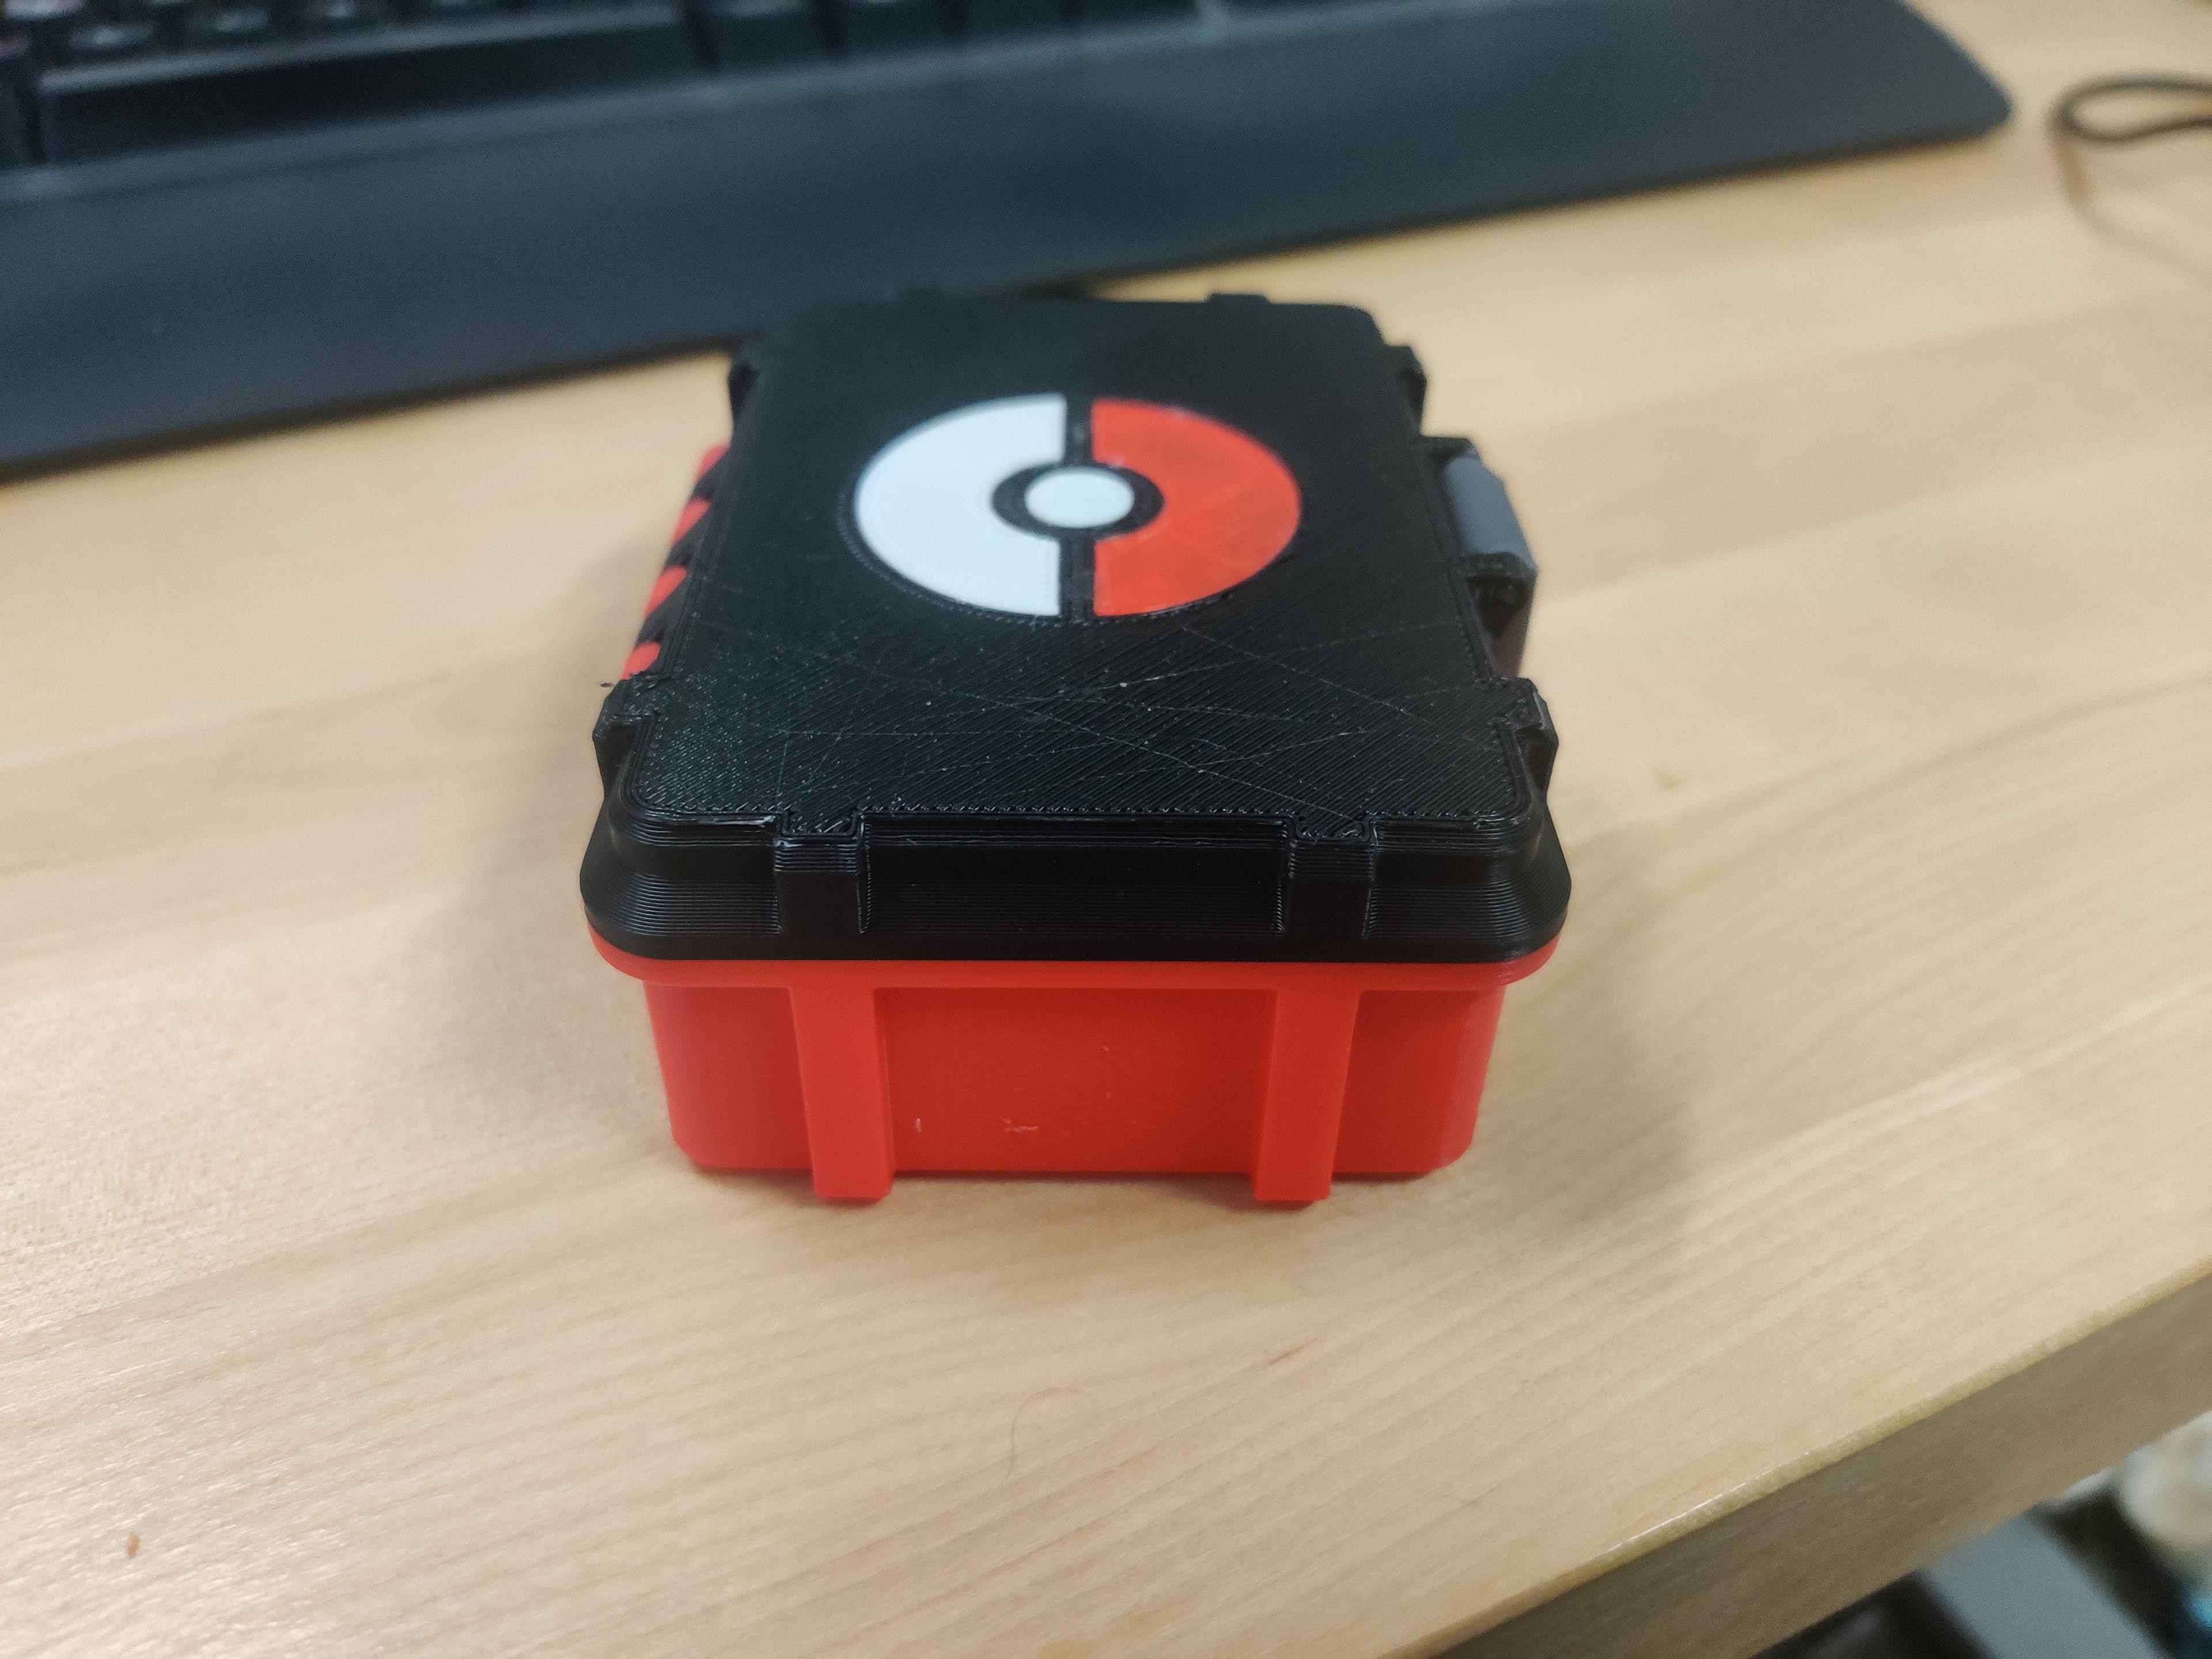 Pokemon Card Case lid Remix 3d model